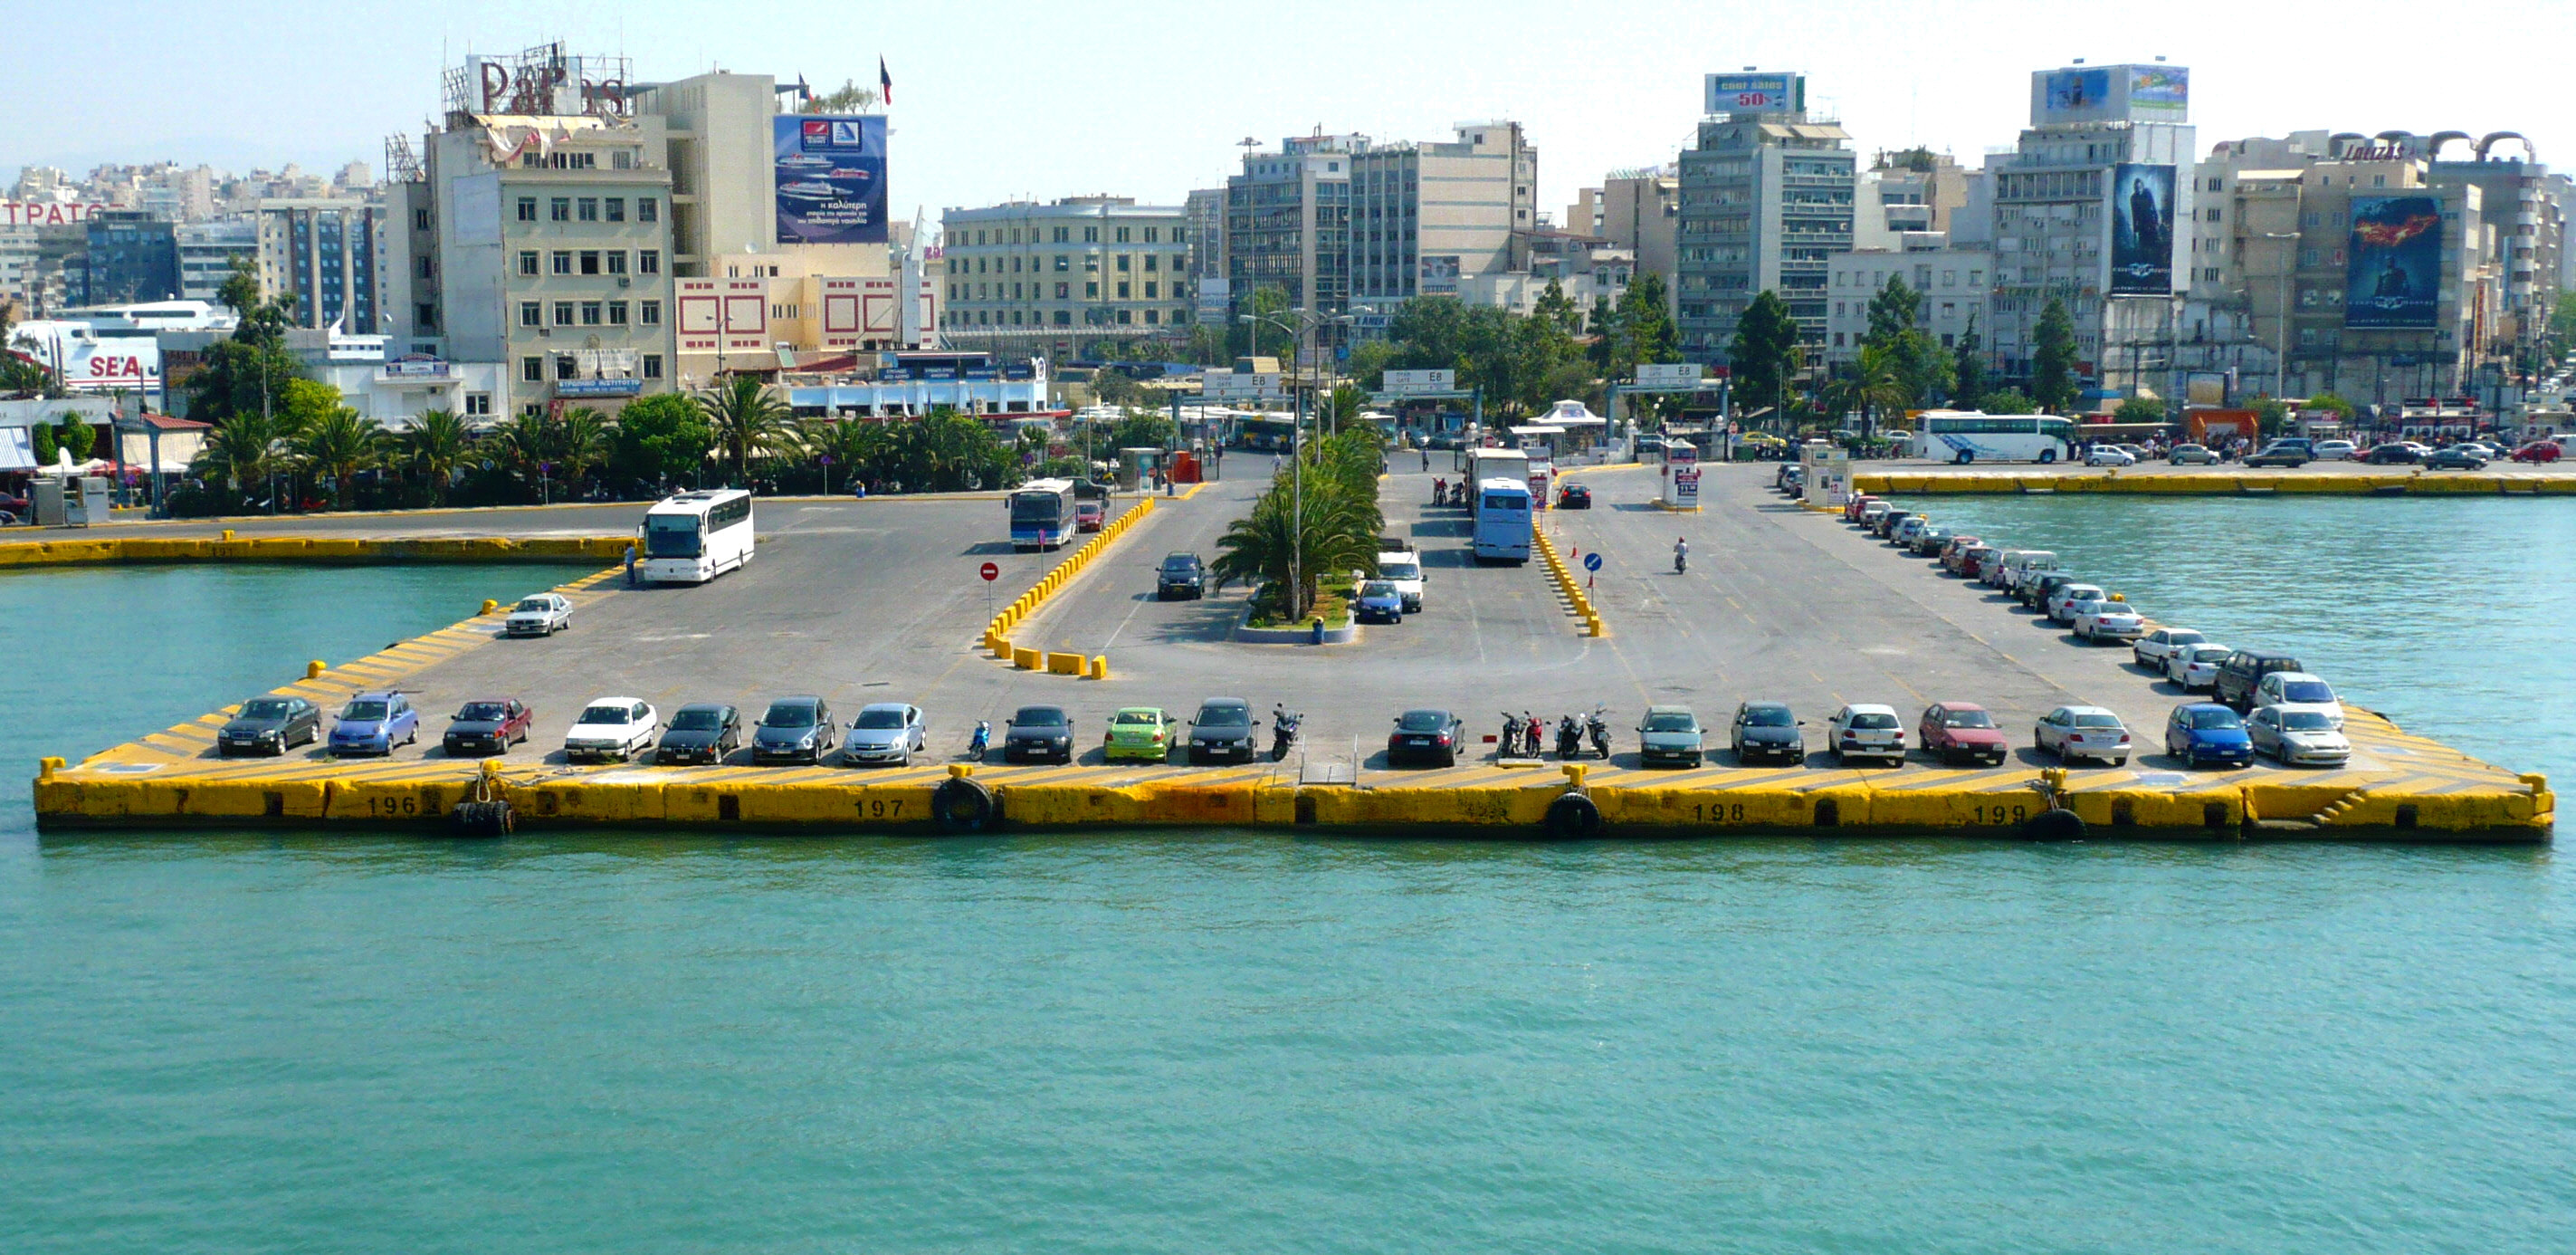 Πτώση ΙΧ στο λιμάνι του Πειραιά, νεκρός ο οδηγός